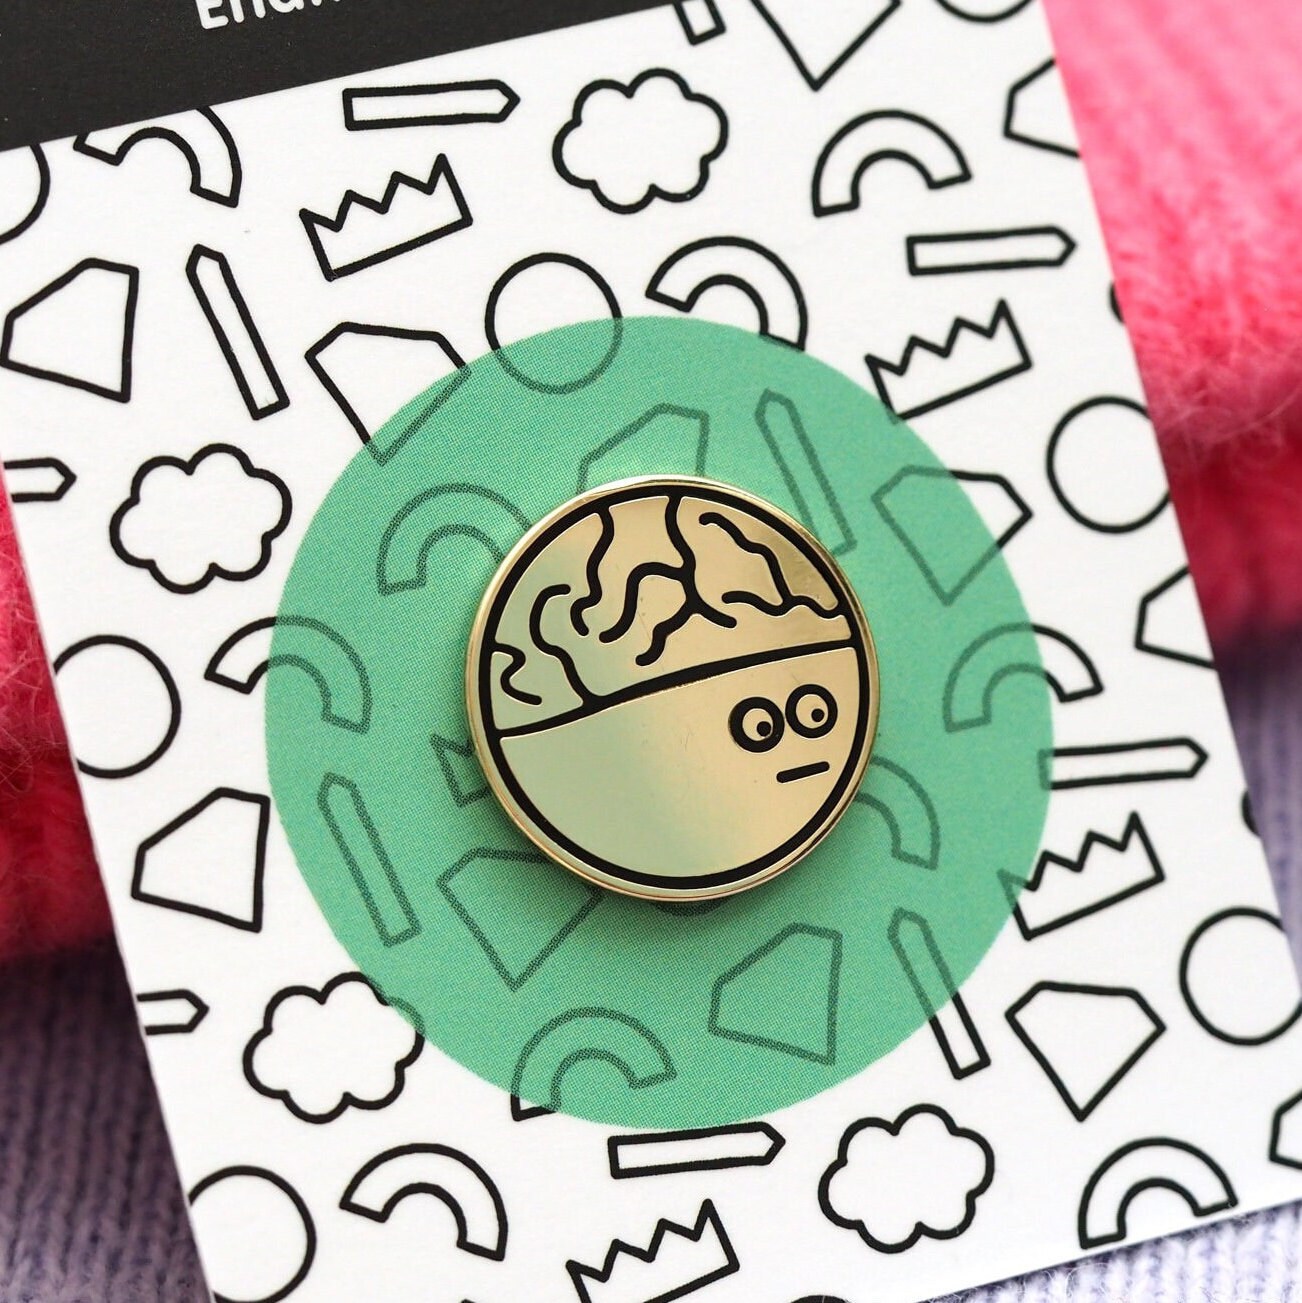 Mr Brain Emaille Pin Abzeichen/Kinder Zeichnung Gehirn Brosche Illustrierte Rockcakes von RockCakes